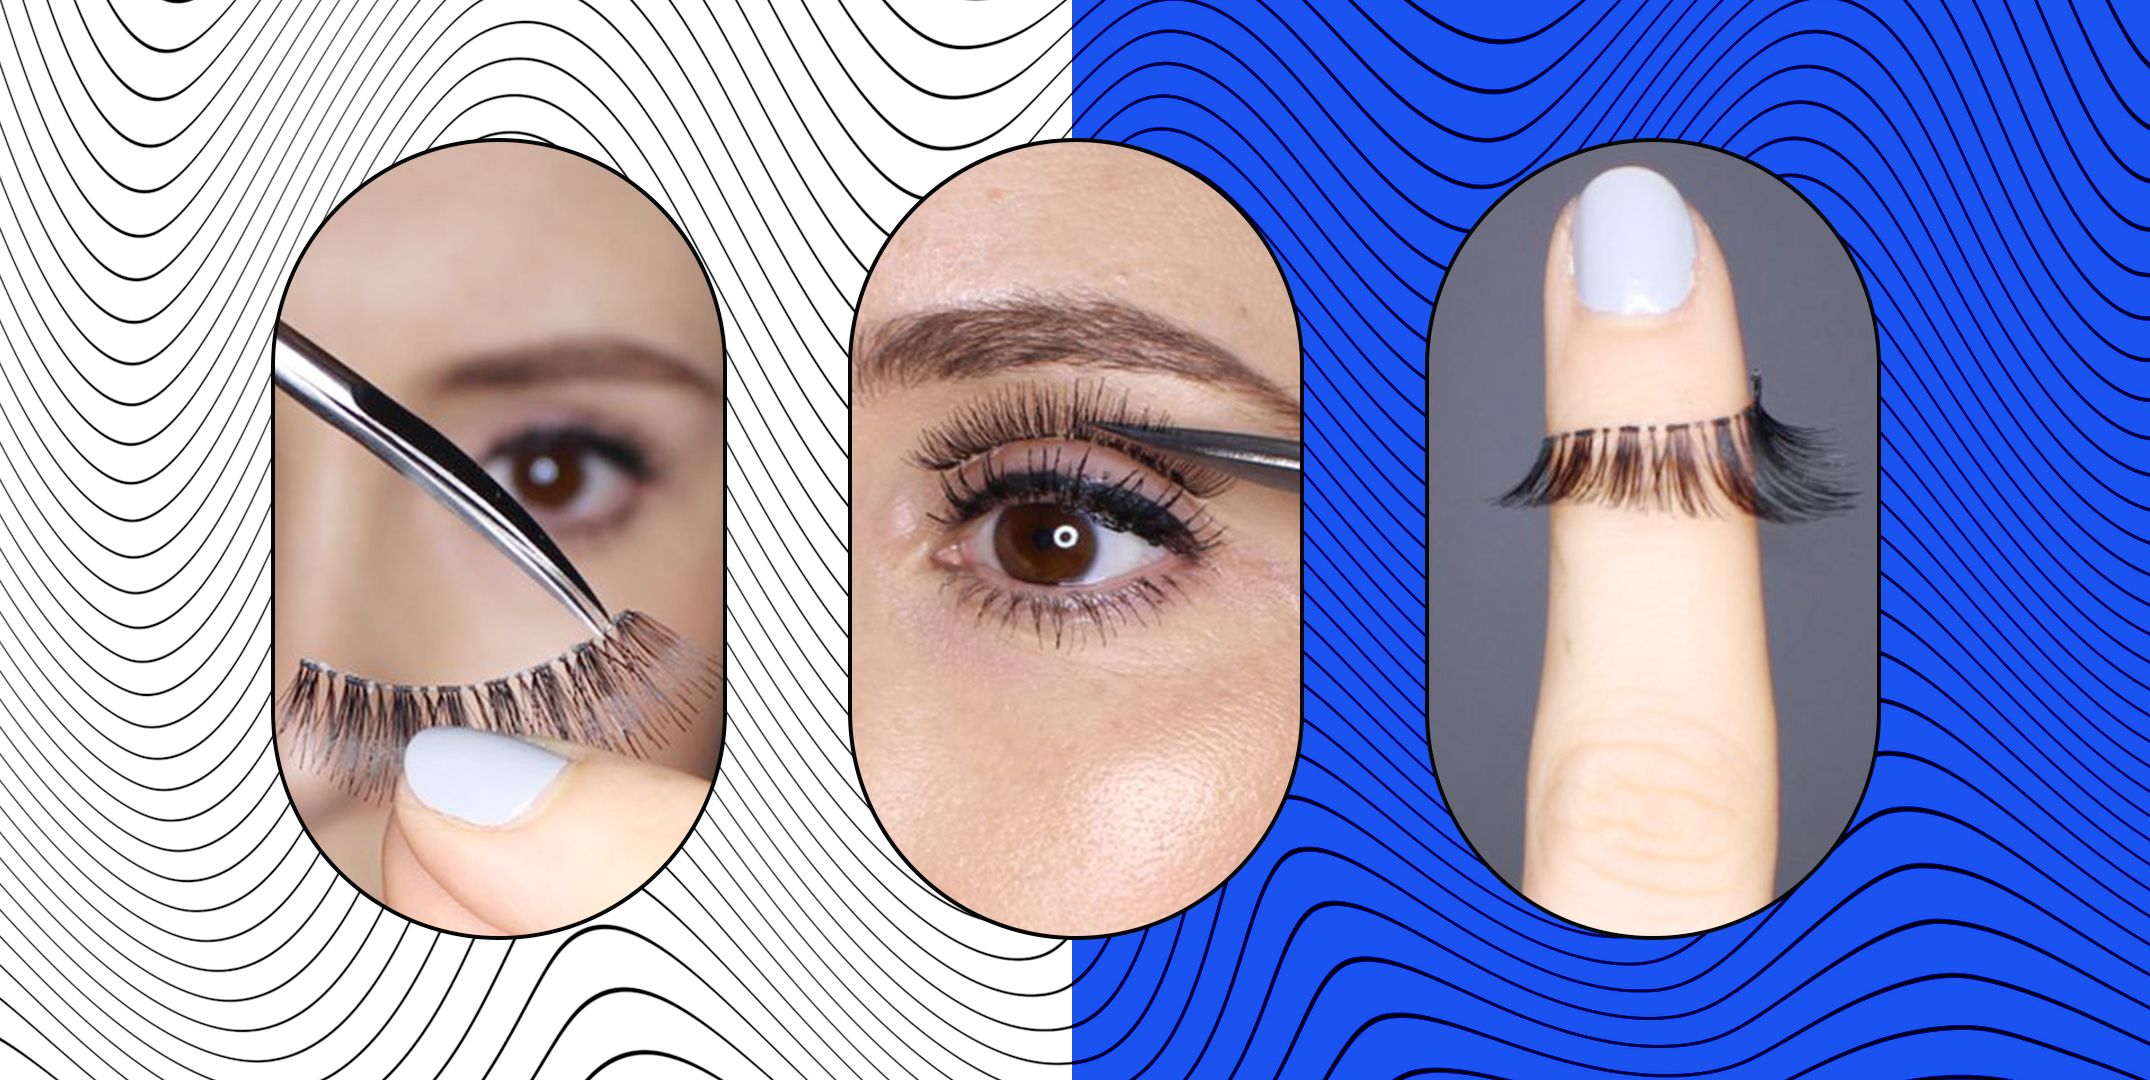 How apply false eyelashes: fake lash application tips